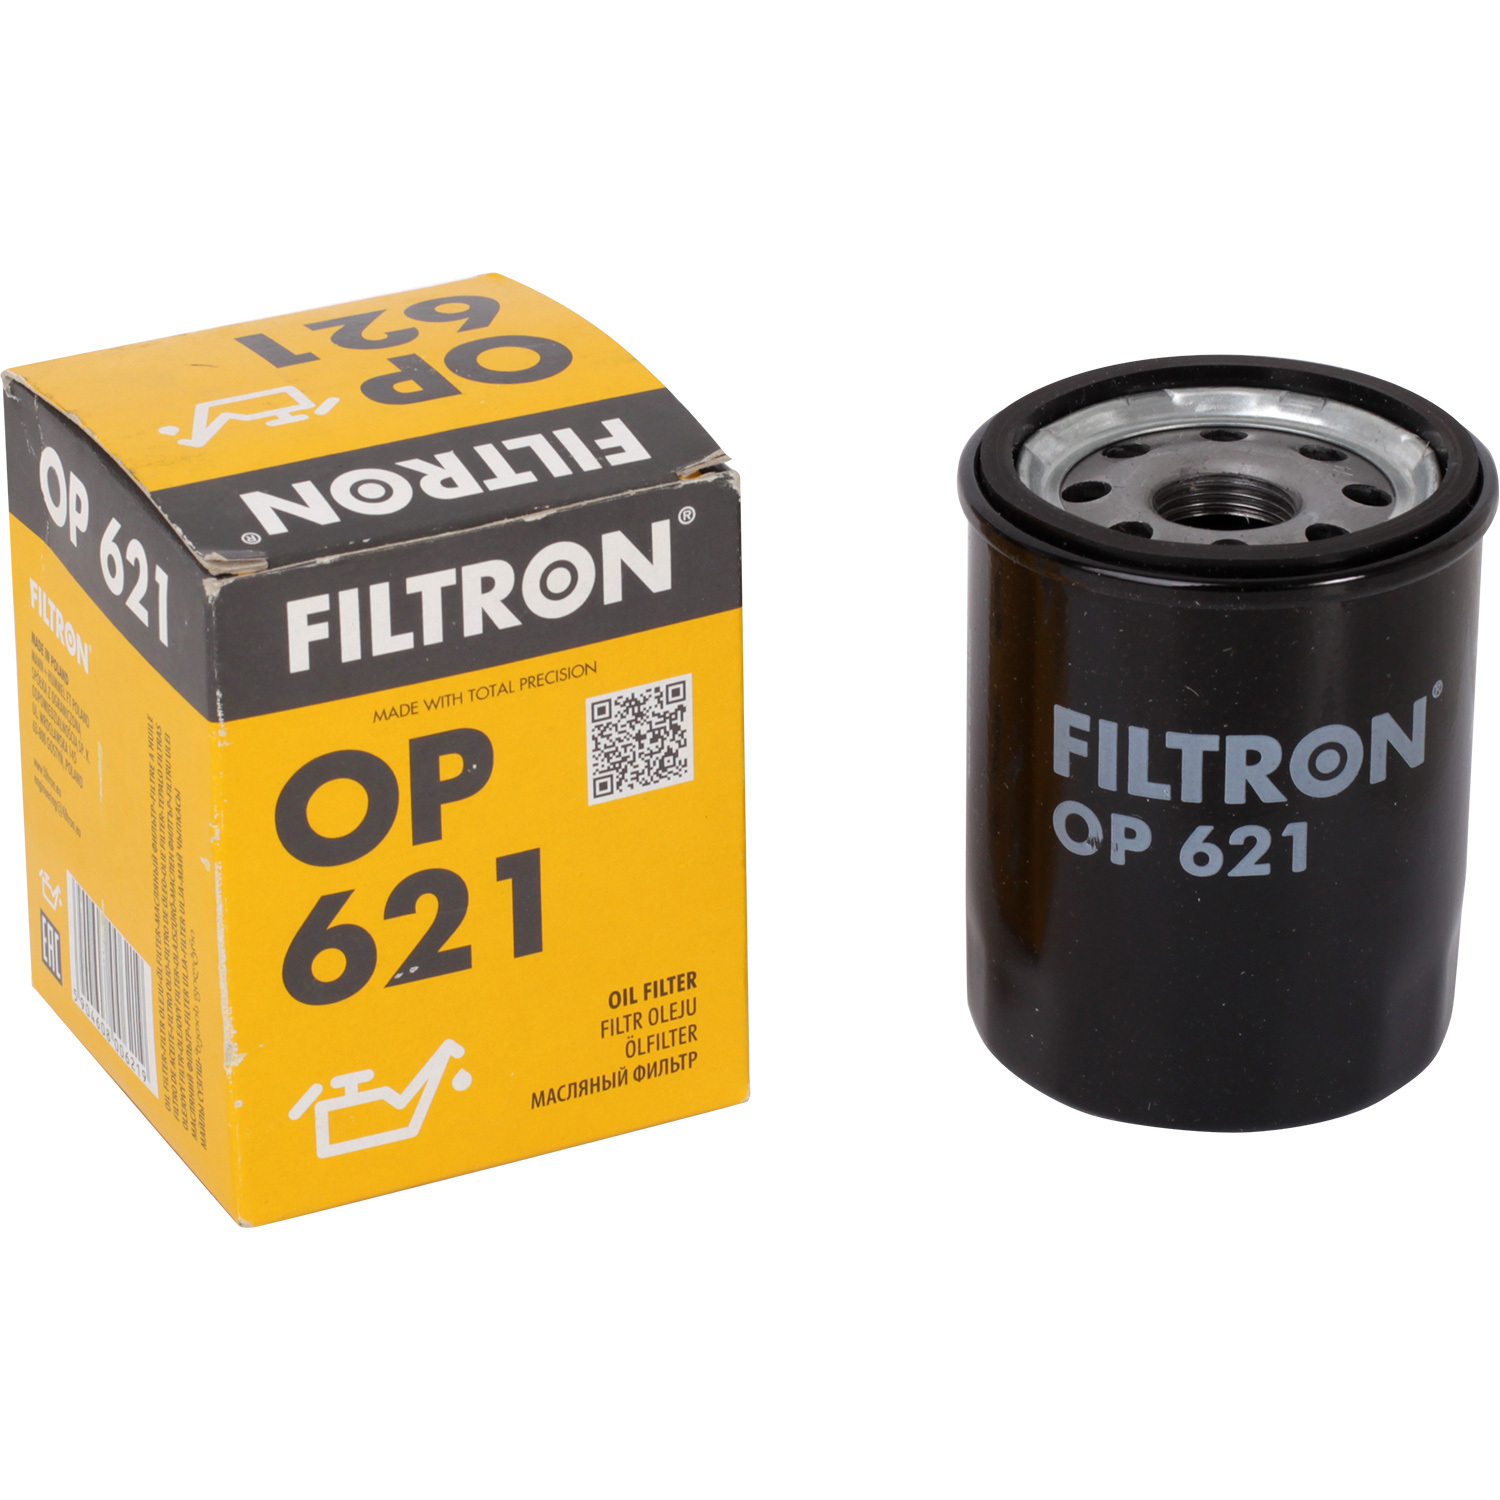 Фильтры Filtron Фильтр масляный Filtron OP621 фильтры filtron фильтр масляный filtron op641